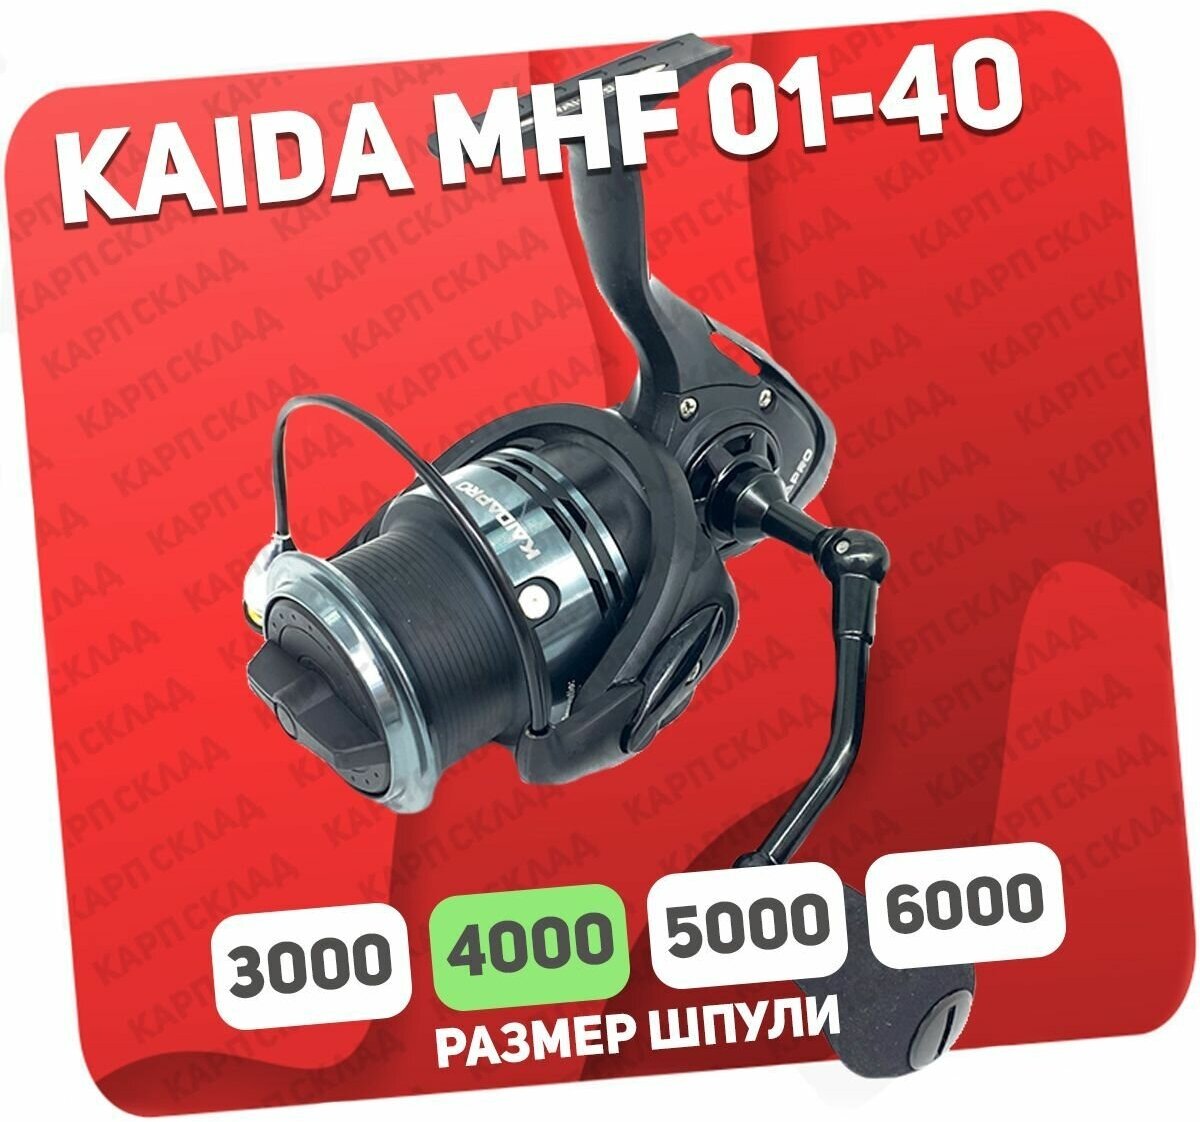 Катушка рыболовная Kaida MHF-01-40 безынерционная